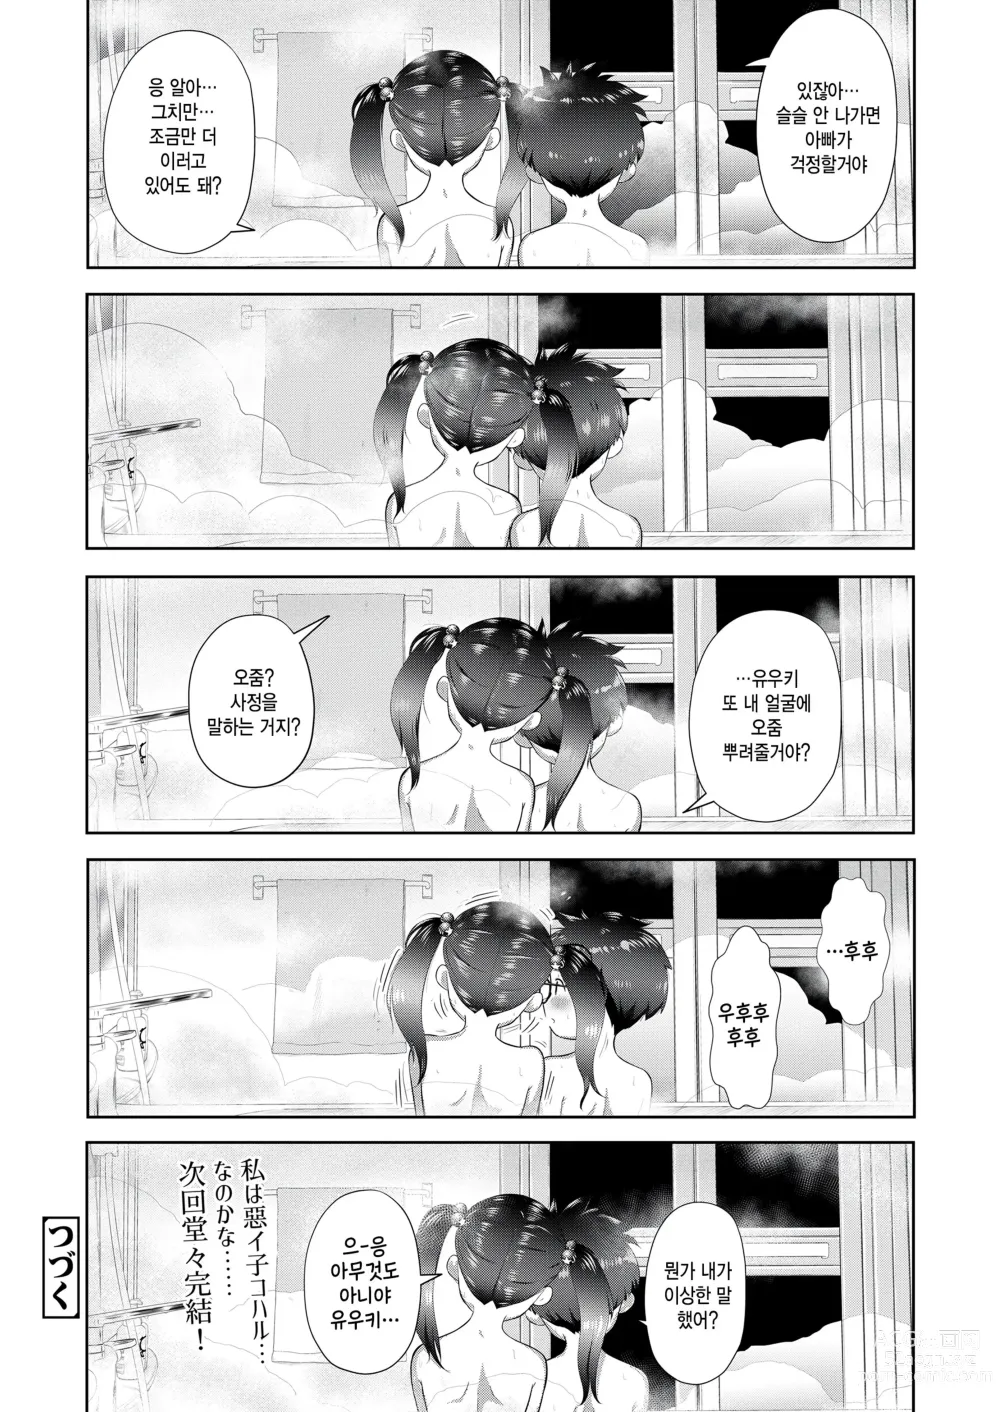 Page 40 of manga Motto Waruiko x Koharu 02